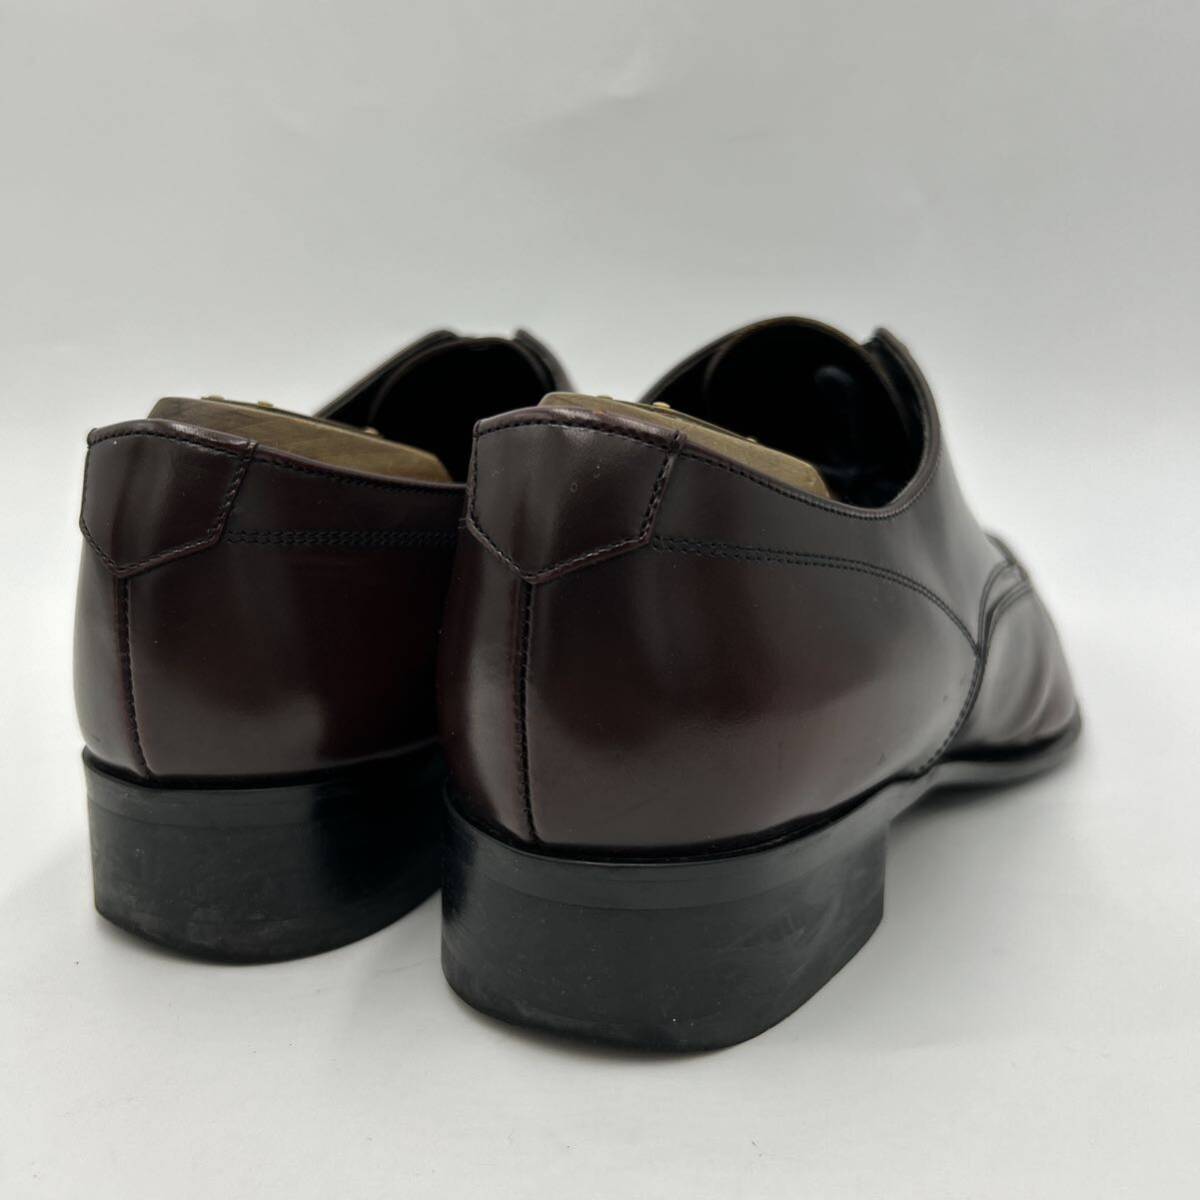 A ■ 日本製 '人気モデル' REGAL リーガル LEATHER ビジネスシューズ 革靴 ドレスシューズ SIZE:25cm 紳士靴 メンズ 外羽根式 ブラウン _画像3